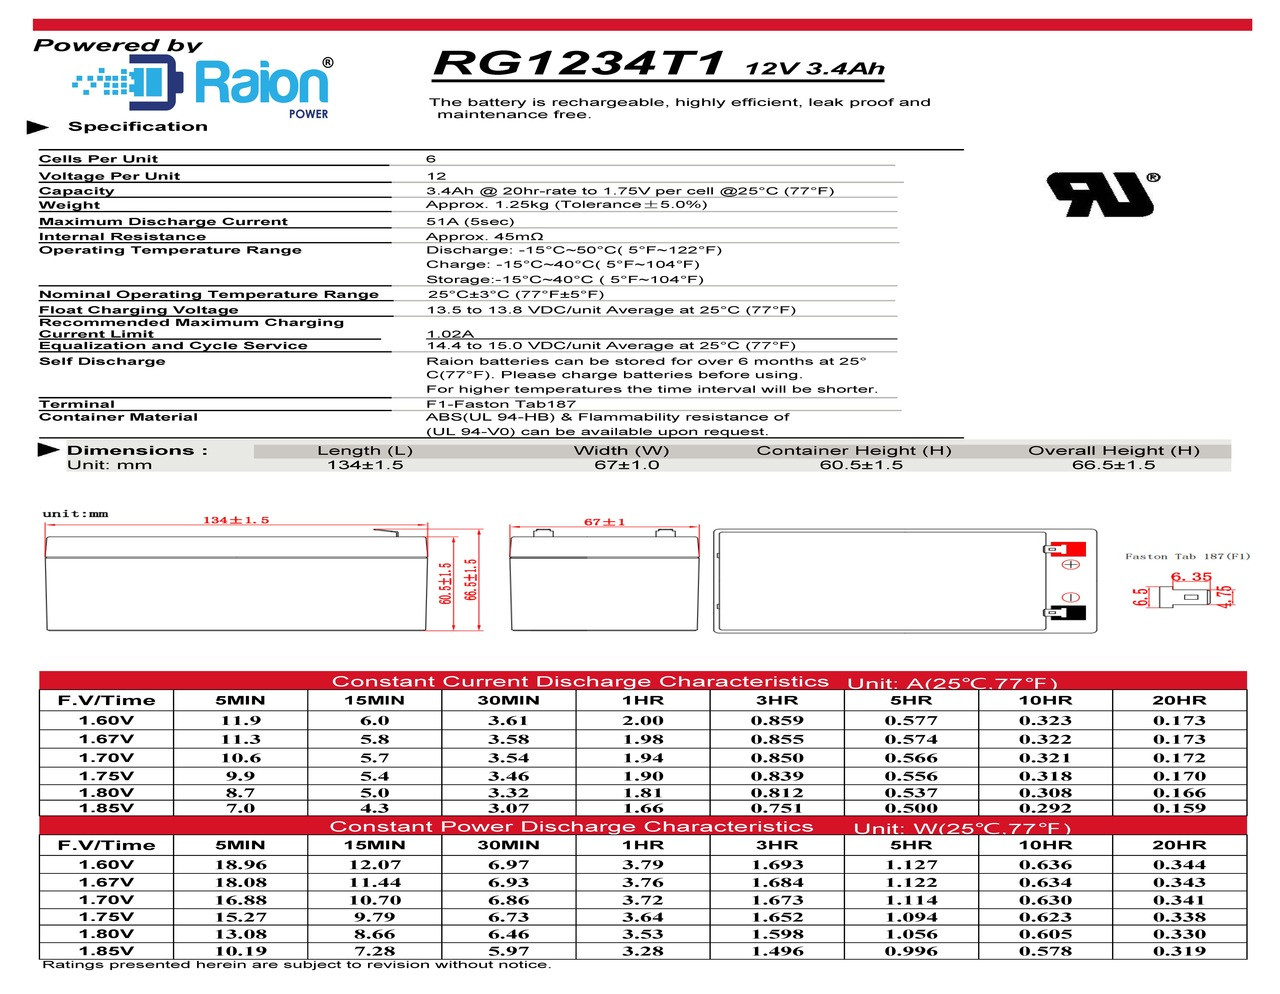 Raion Power RG1234T1 12V 3.4Ah Battery Data Sheet for Nellcor Puritan Bennett N-6000 Monitor